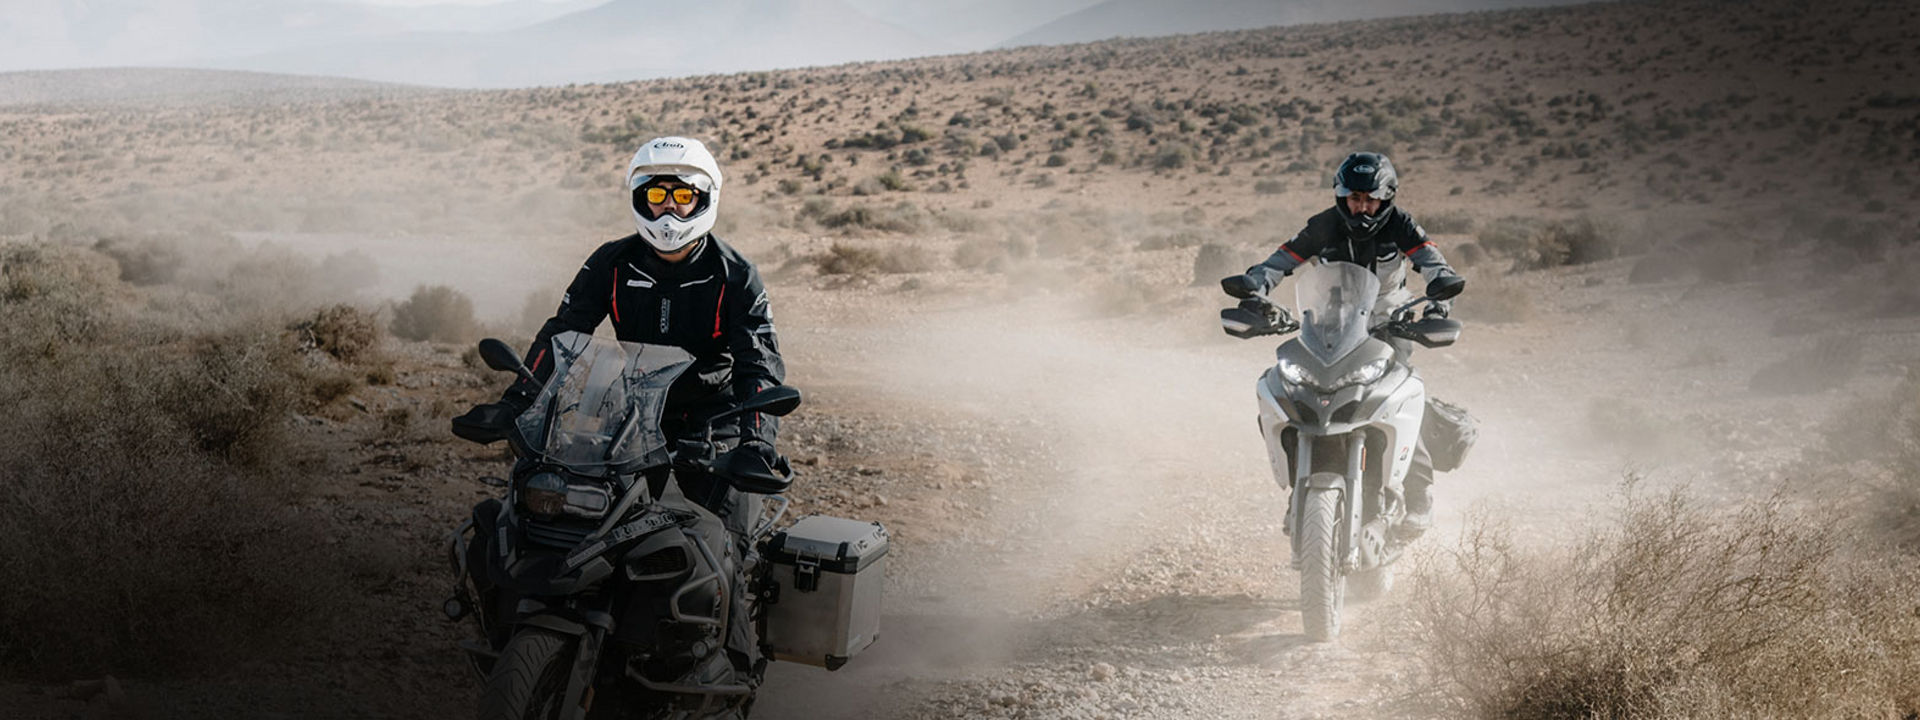 Das Bild zeigt zwei Motorradfahrer, die auf Bridgestone- Adventurereifen die Wüste erkunden.